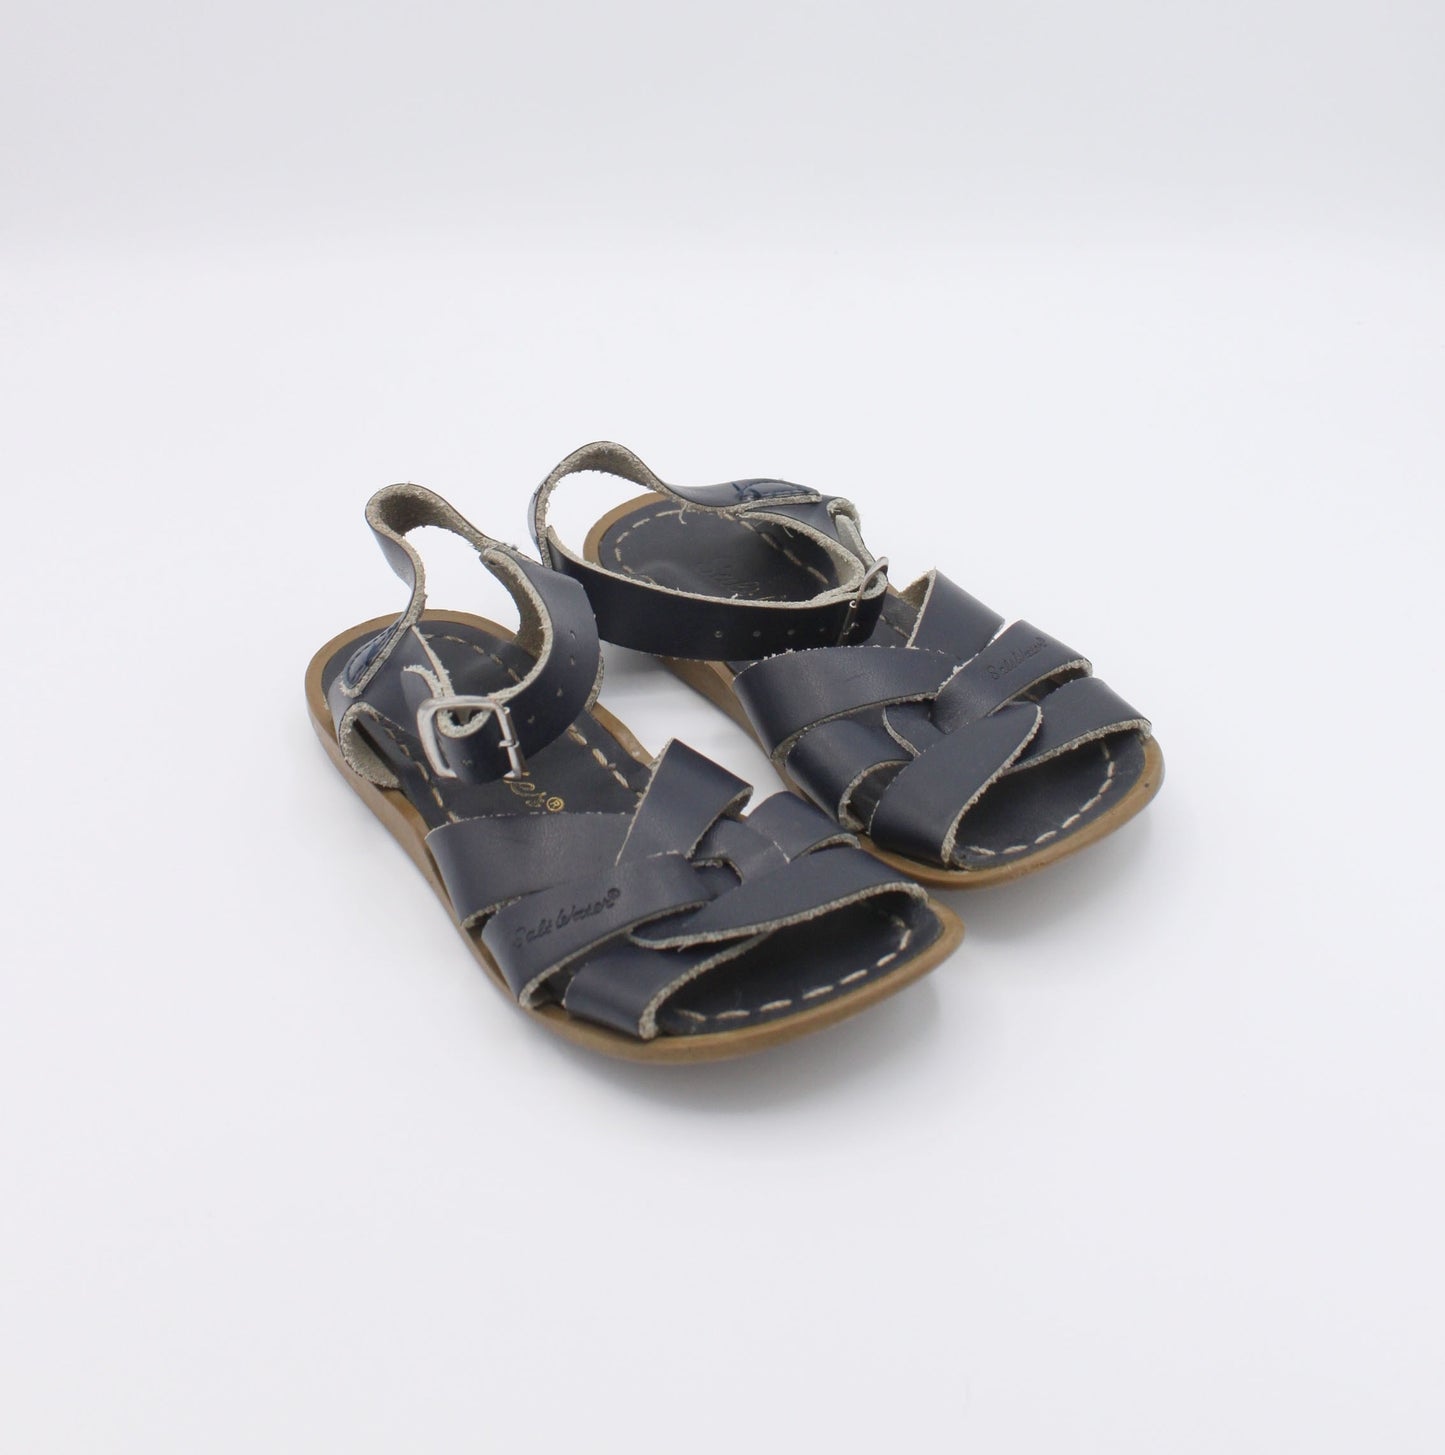 Pre-loved Sandals (EU26/27)